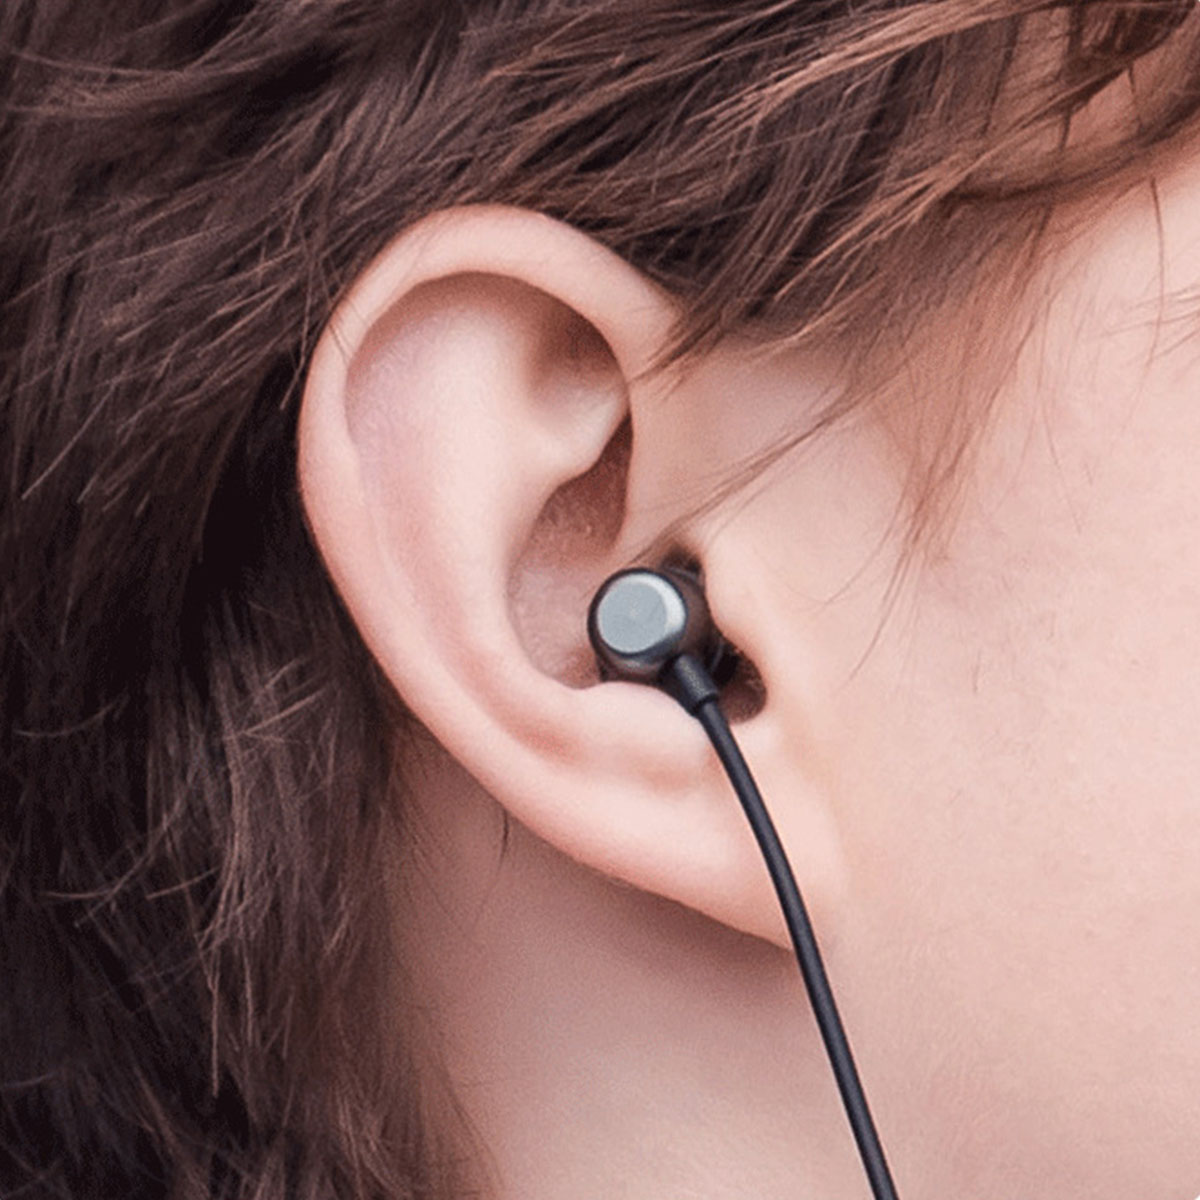 BRIGHTAKE Drahtlose Bluetooth Kopfhörer – Schwarz Sportler!, Bluetooth-Kopfhörer Perfekte für Begleiter Der Neckband